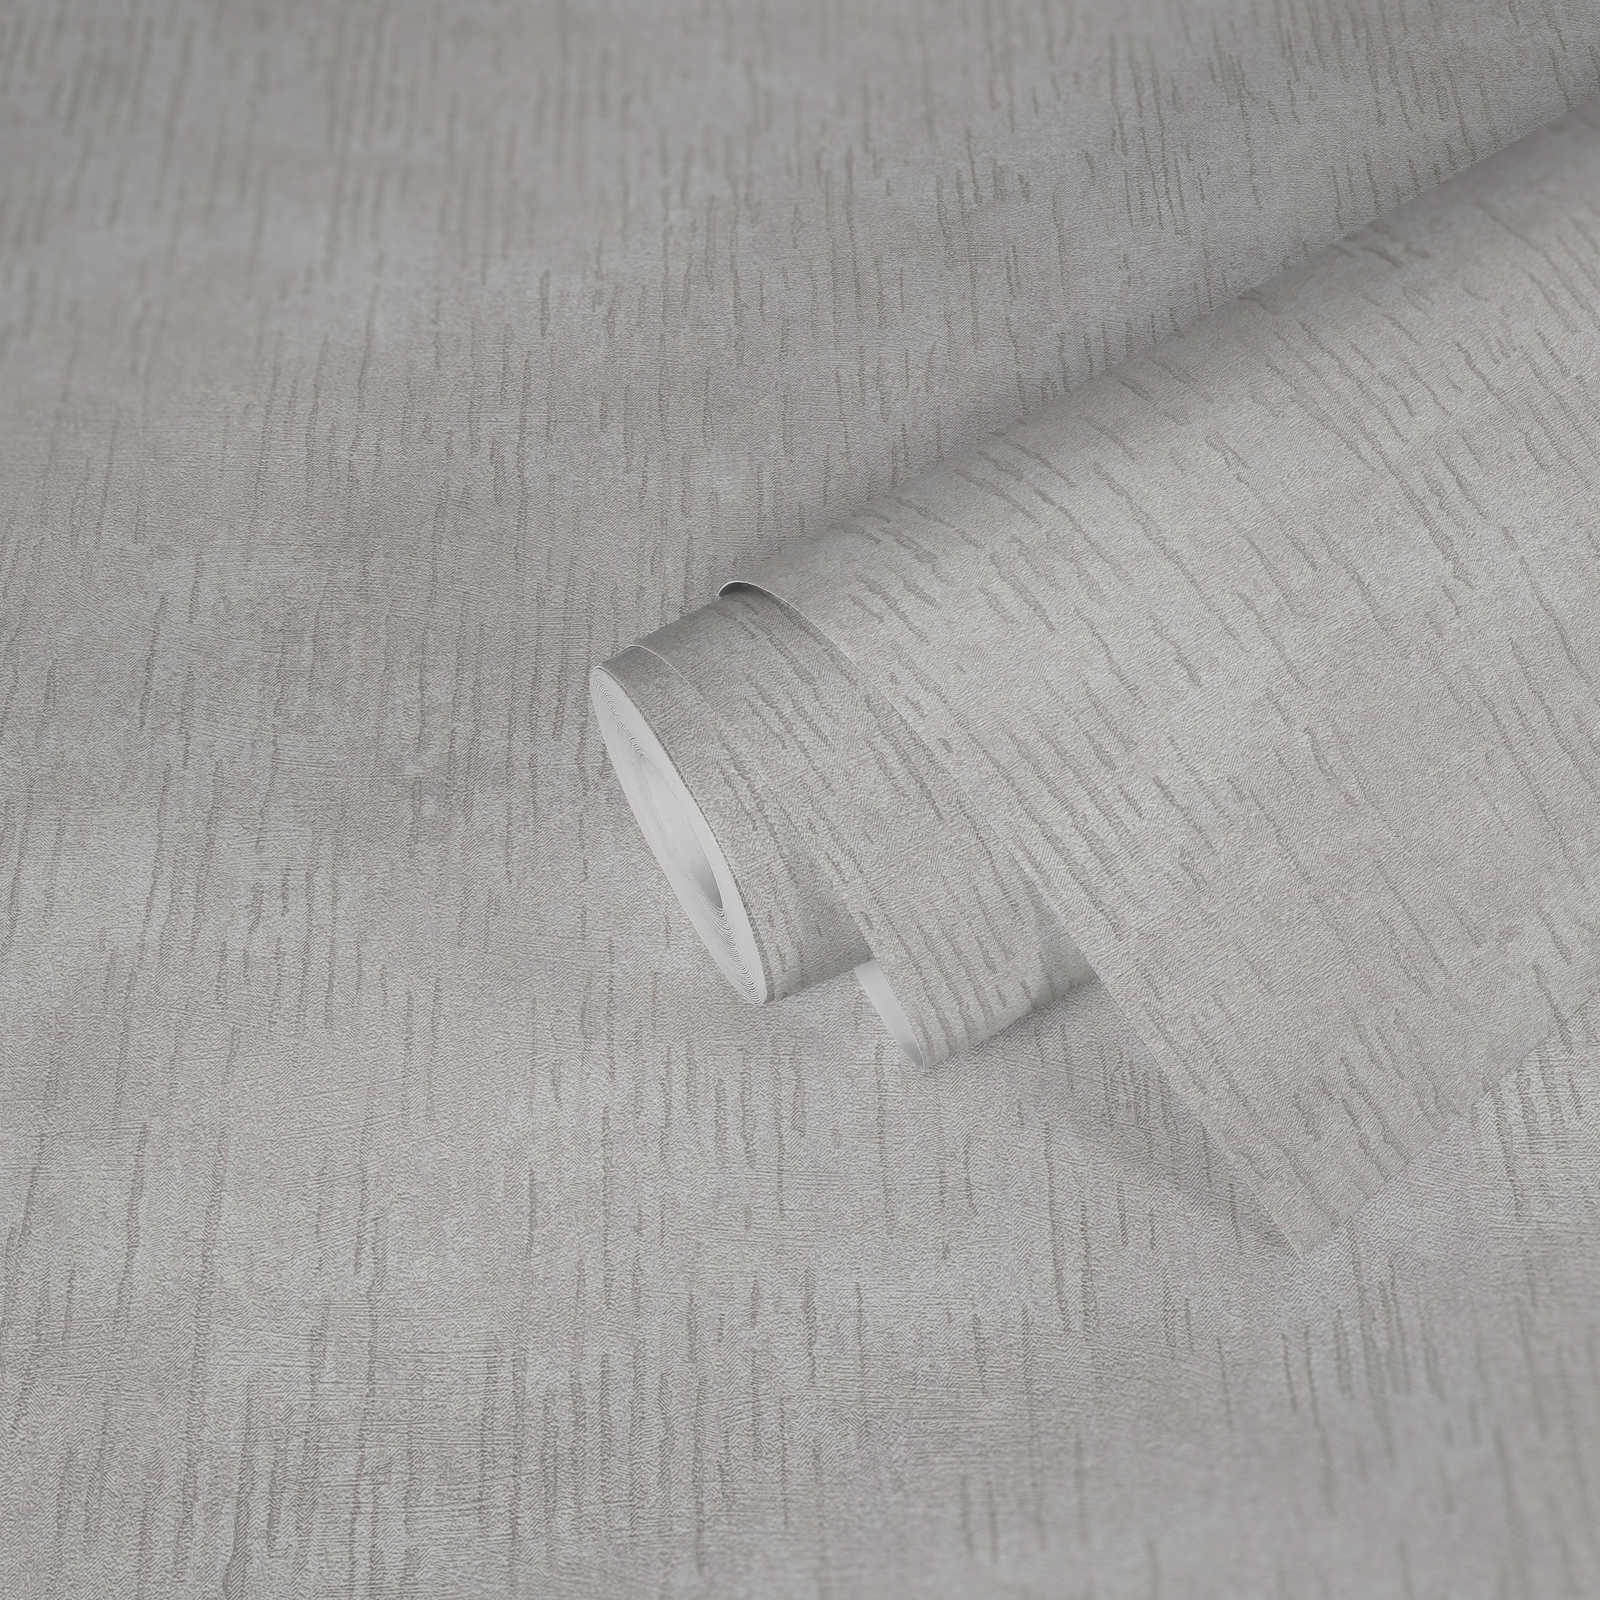             Glanzend structuurbehang met metallic patroon - beige, crème, metallic
        